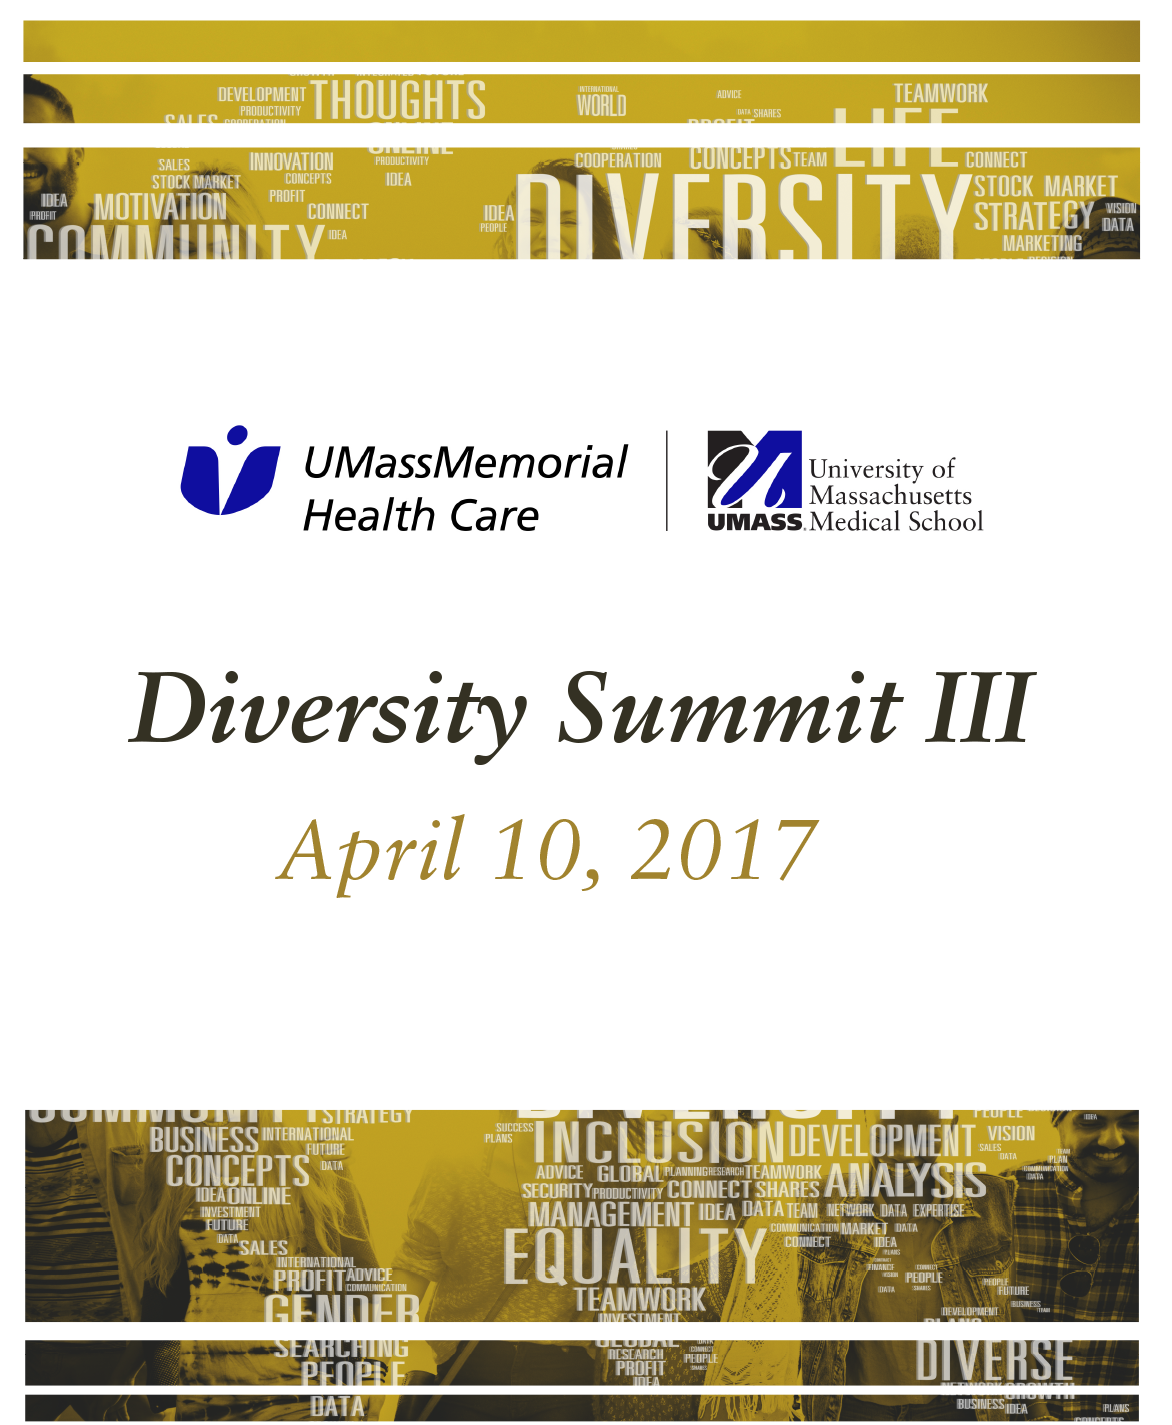 Diversity Summit III